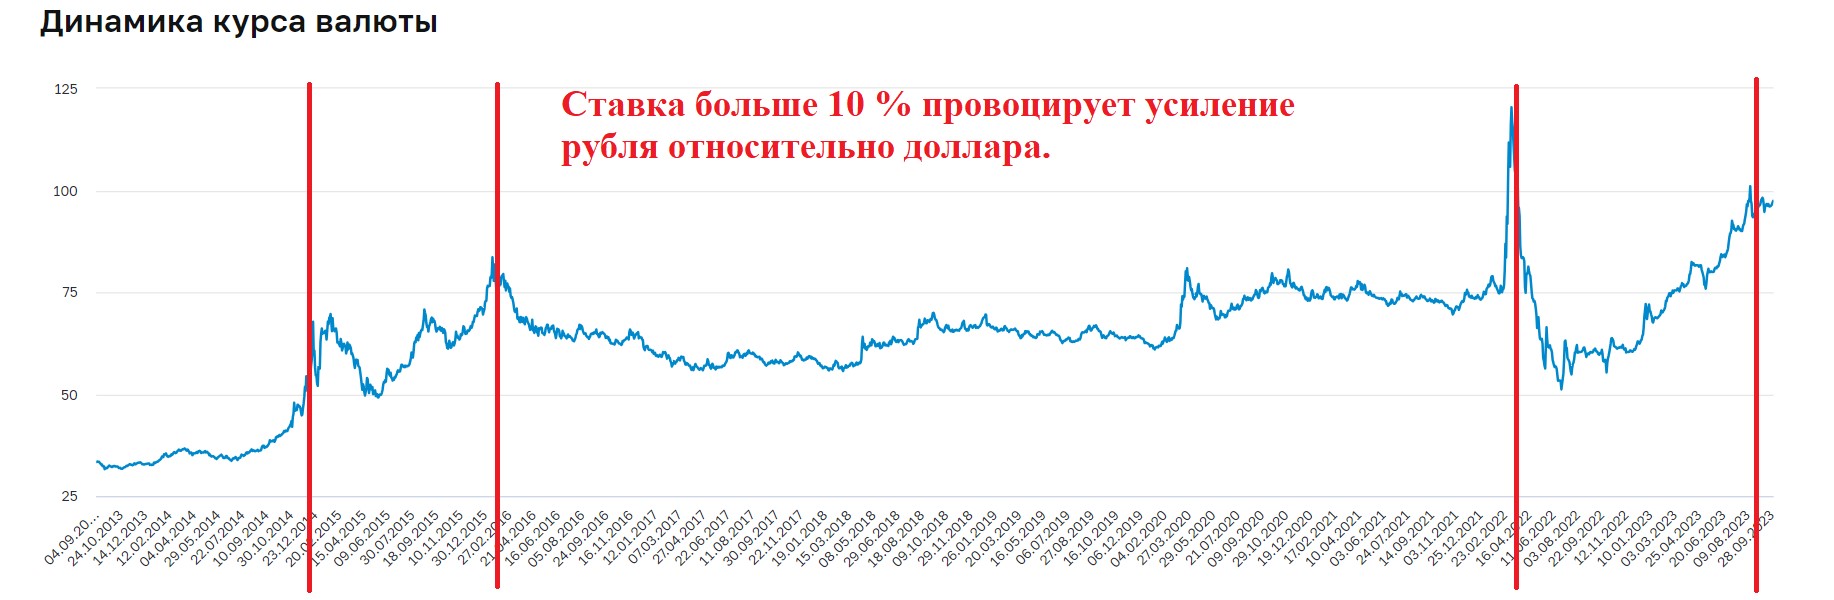 Финансист Алекс Грей объяснил, закончилась ли девальвация рубля